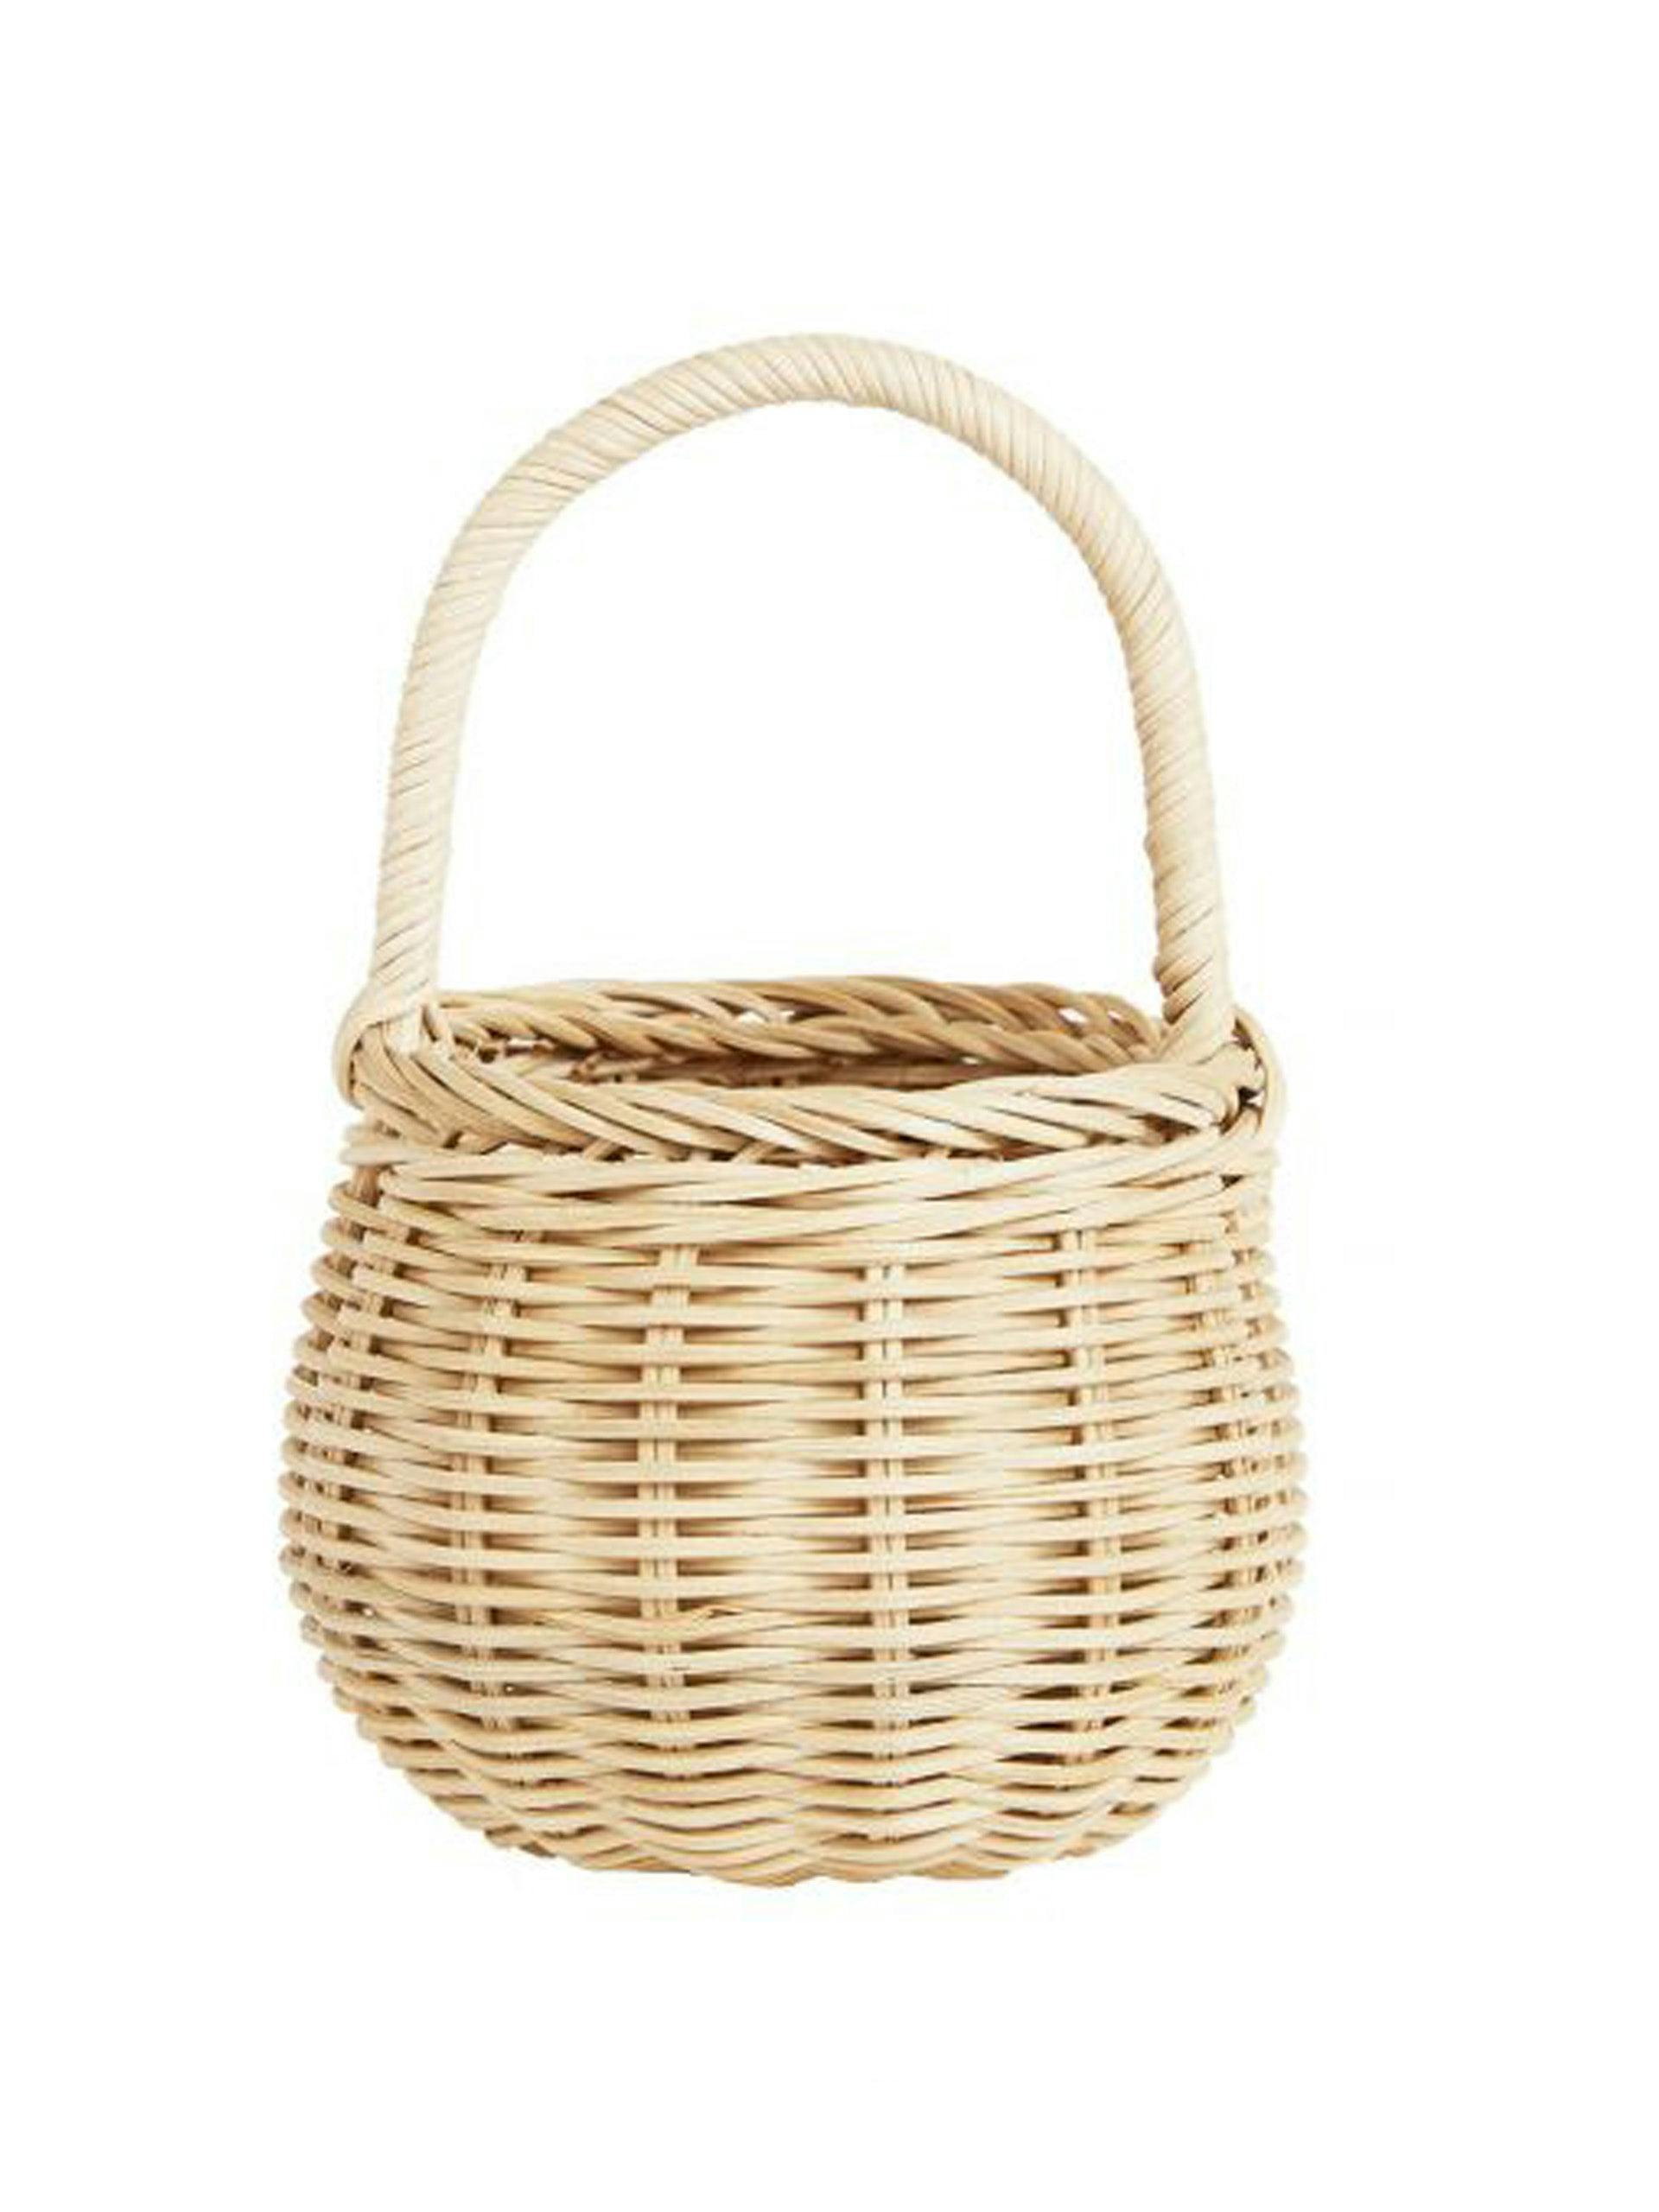 Wicker berry basket